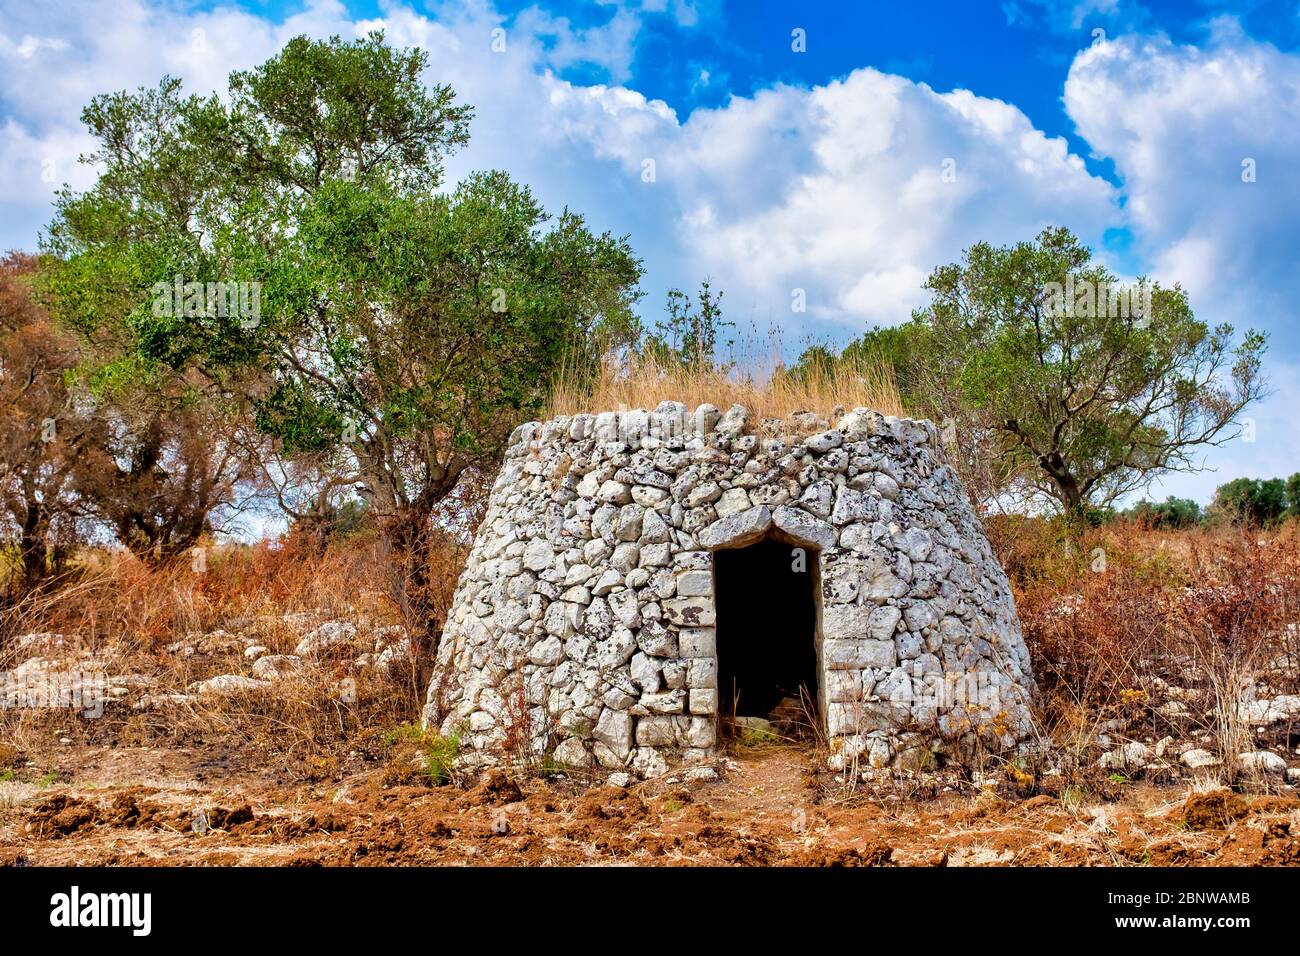 Casèdde, une cabane traditionnelle en pierre sèche dans la péninsule de Salento, Apulia, Italie Banque D'Images